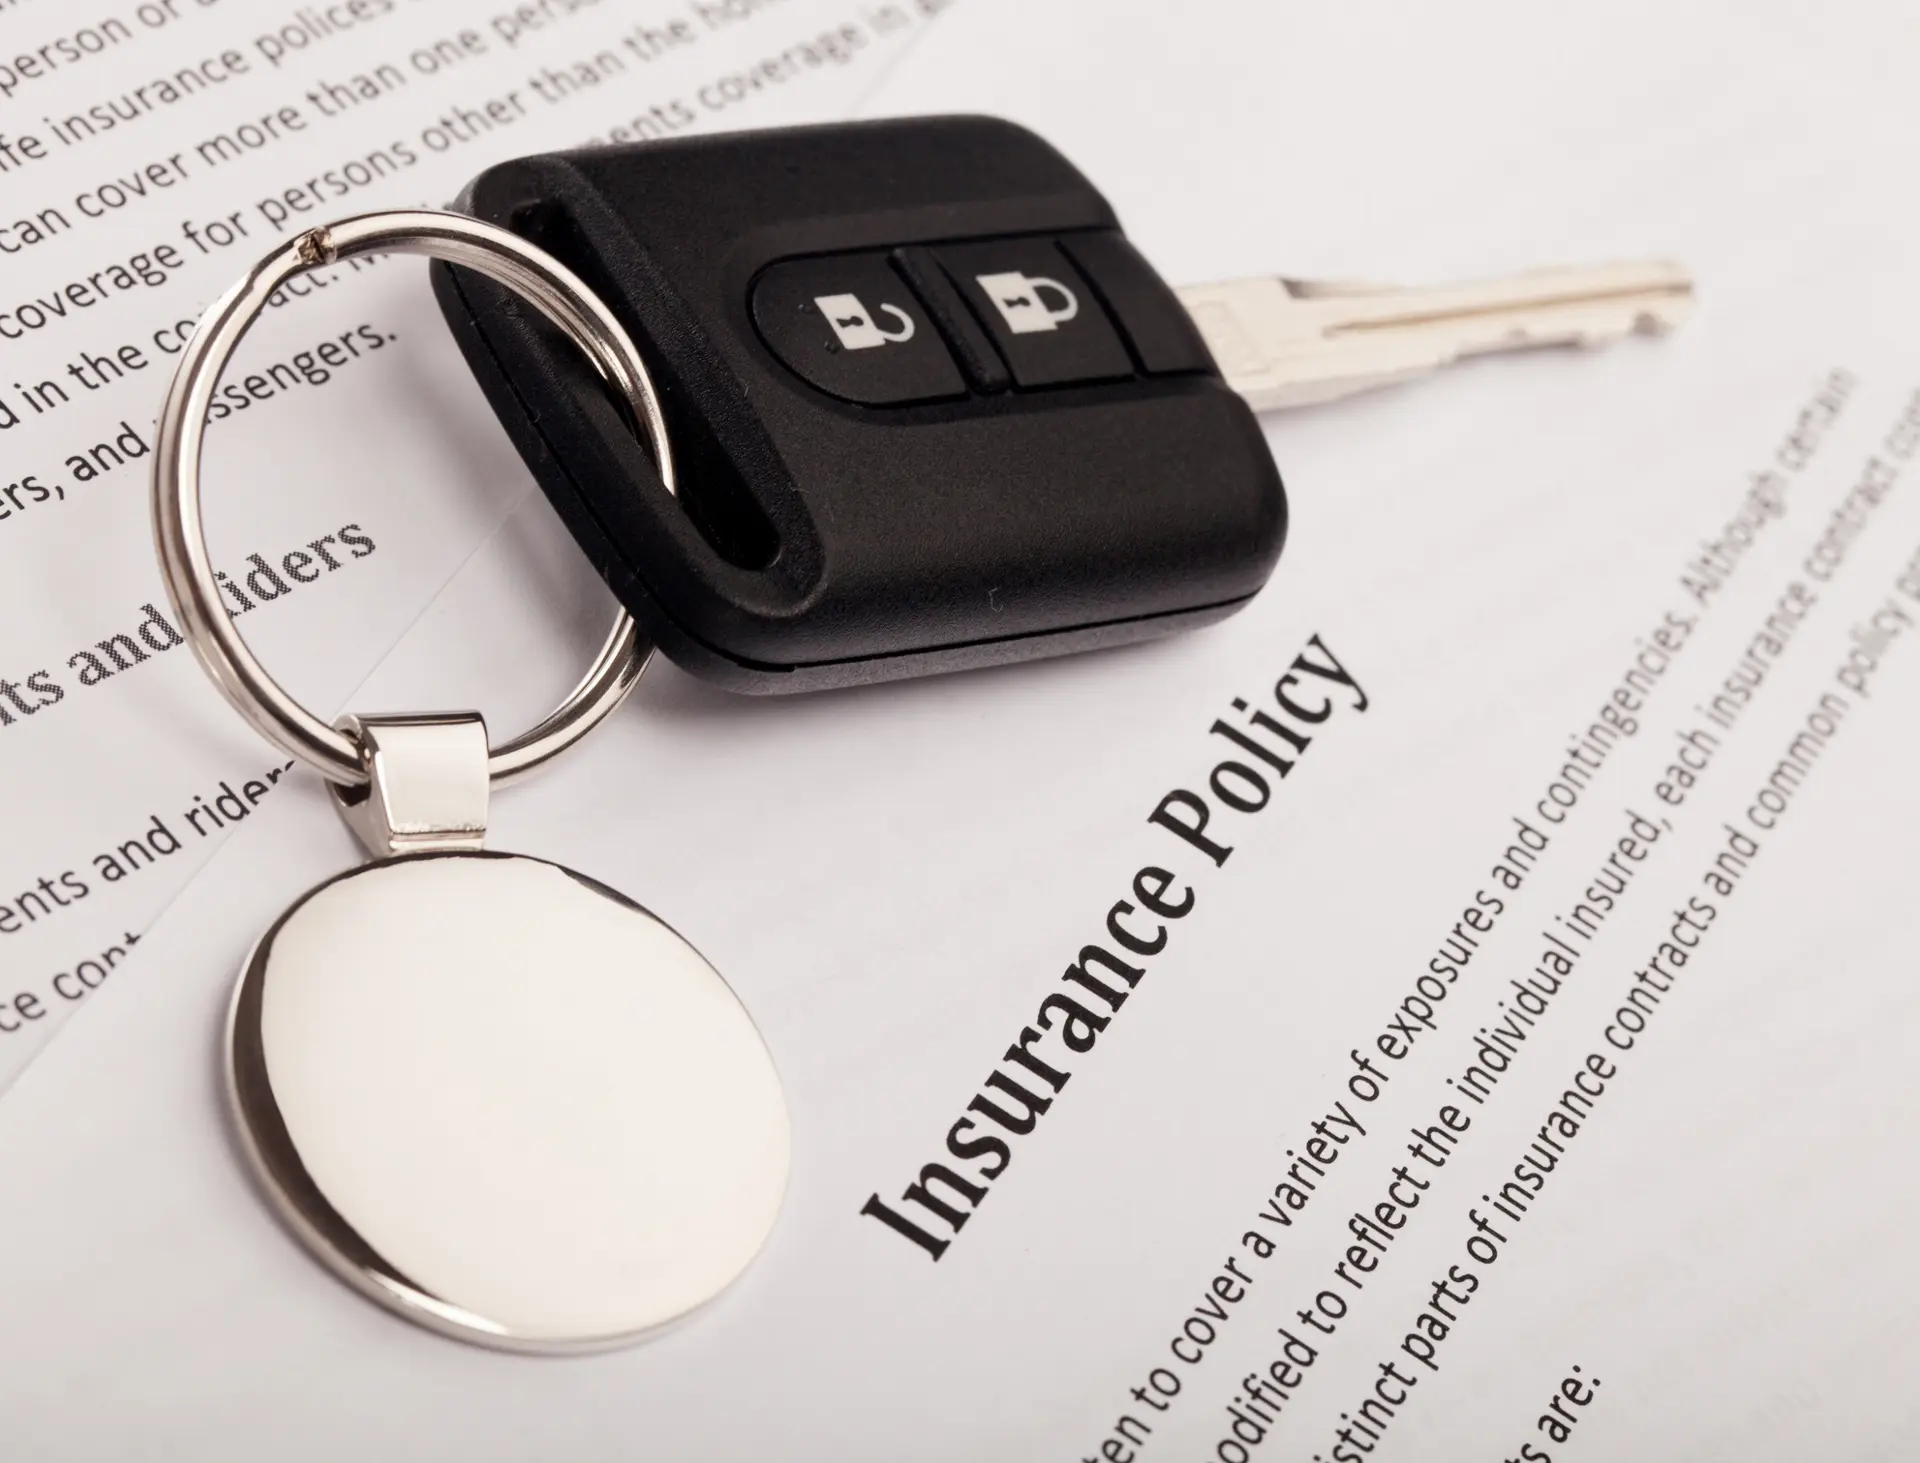 2018.07 auto insurance part 1